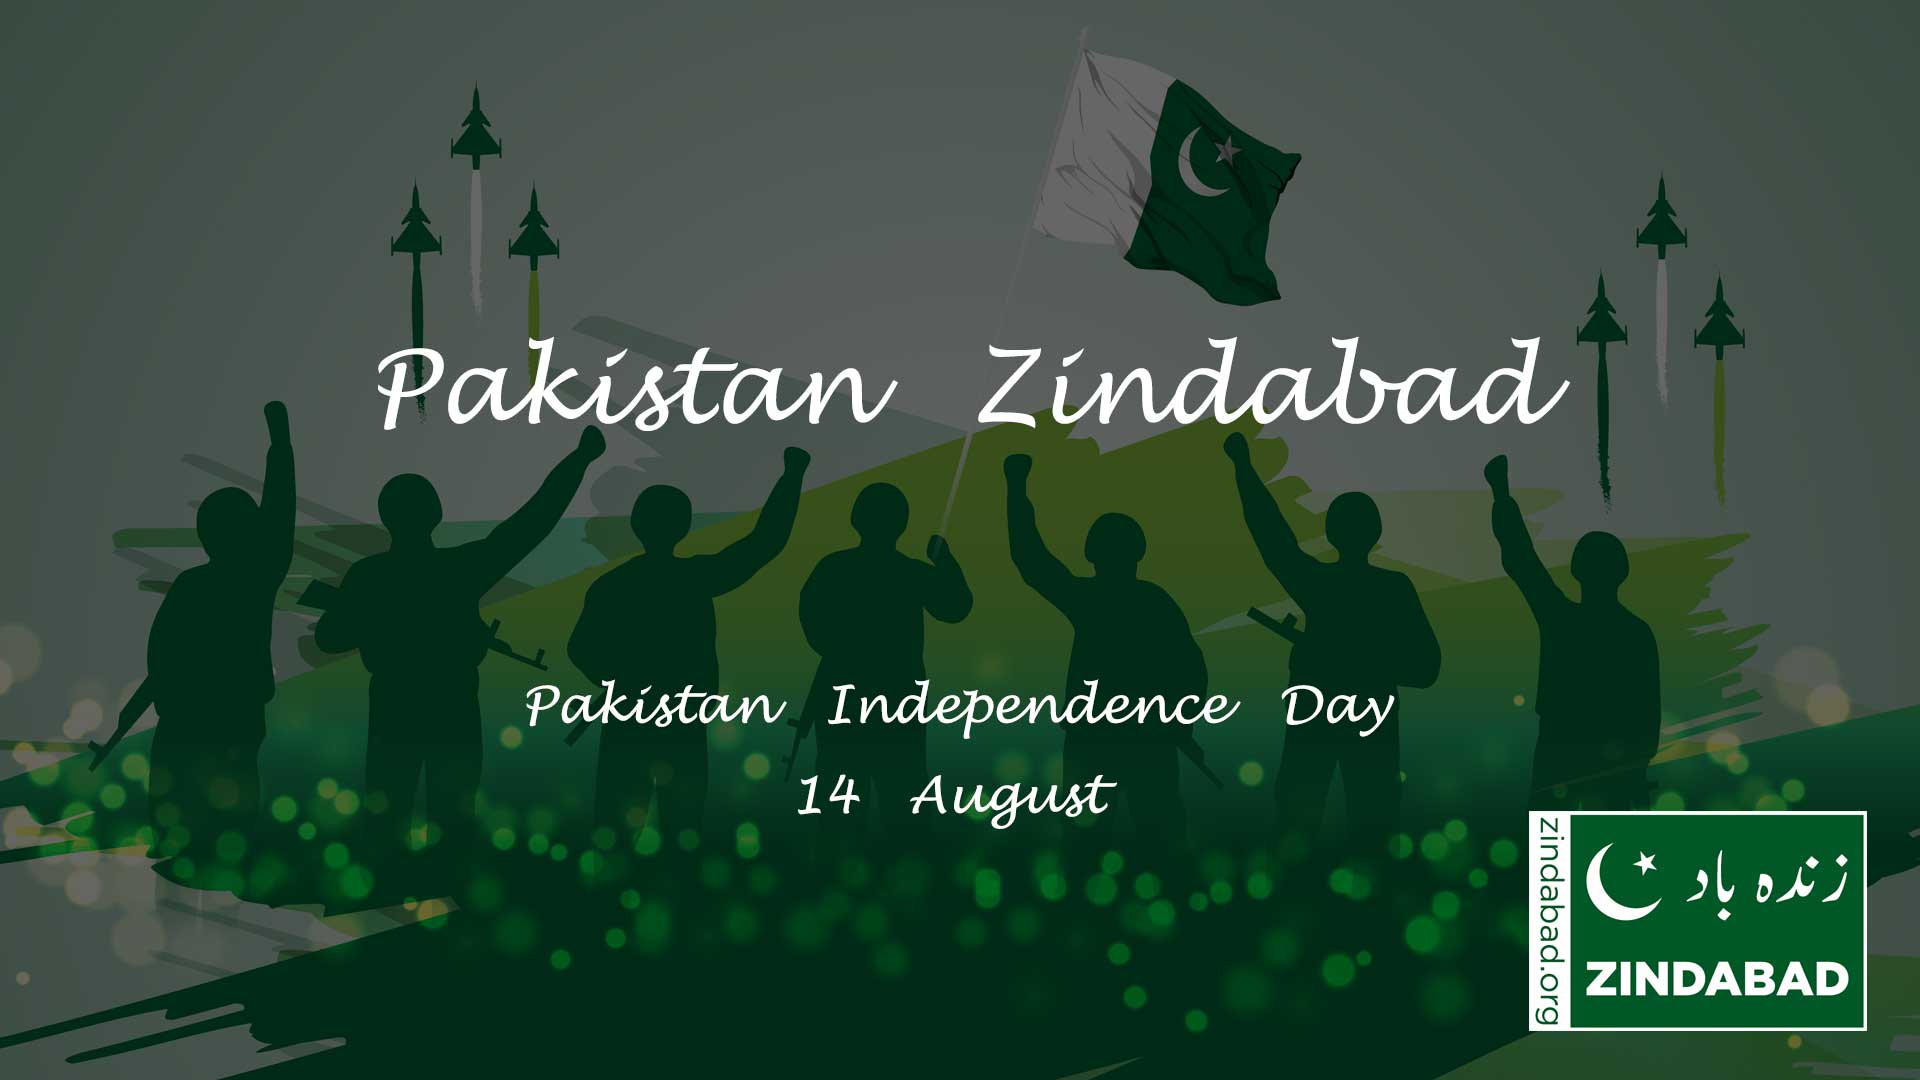 Pakistan Independence Day - Pakistan Zindabad - ZINDABAD - zindabad.org